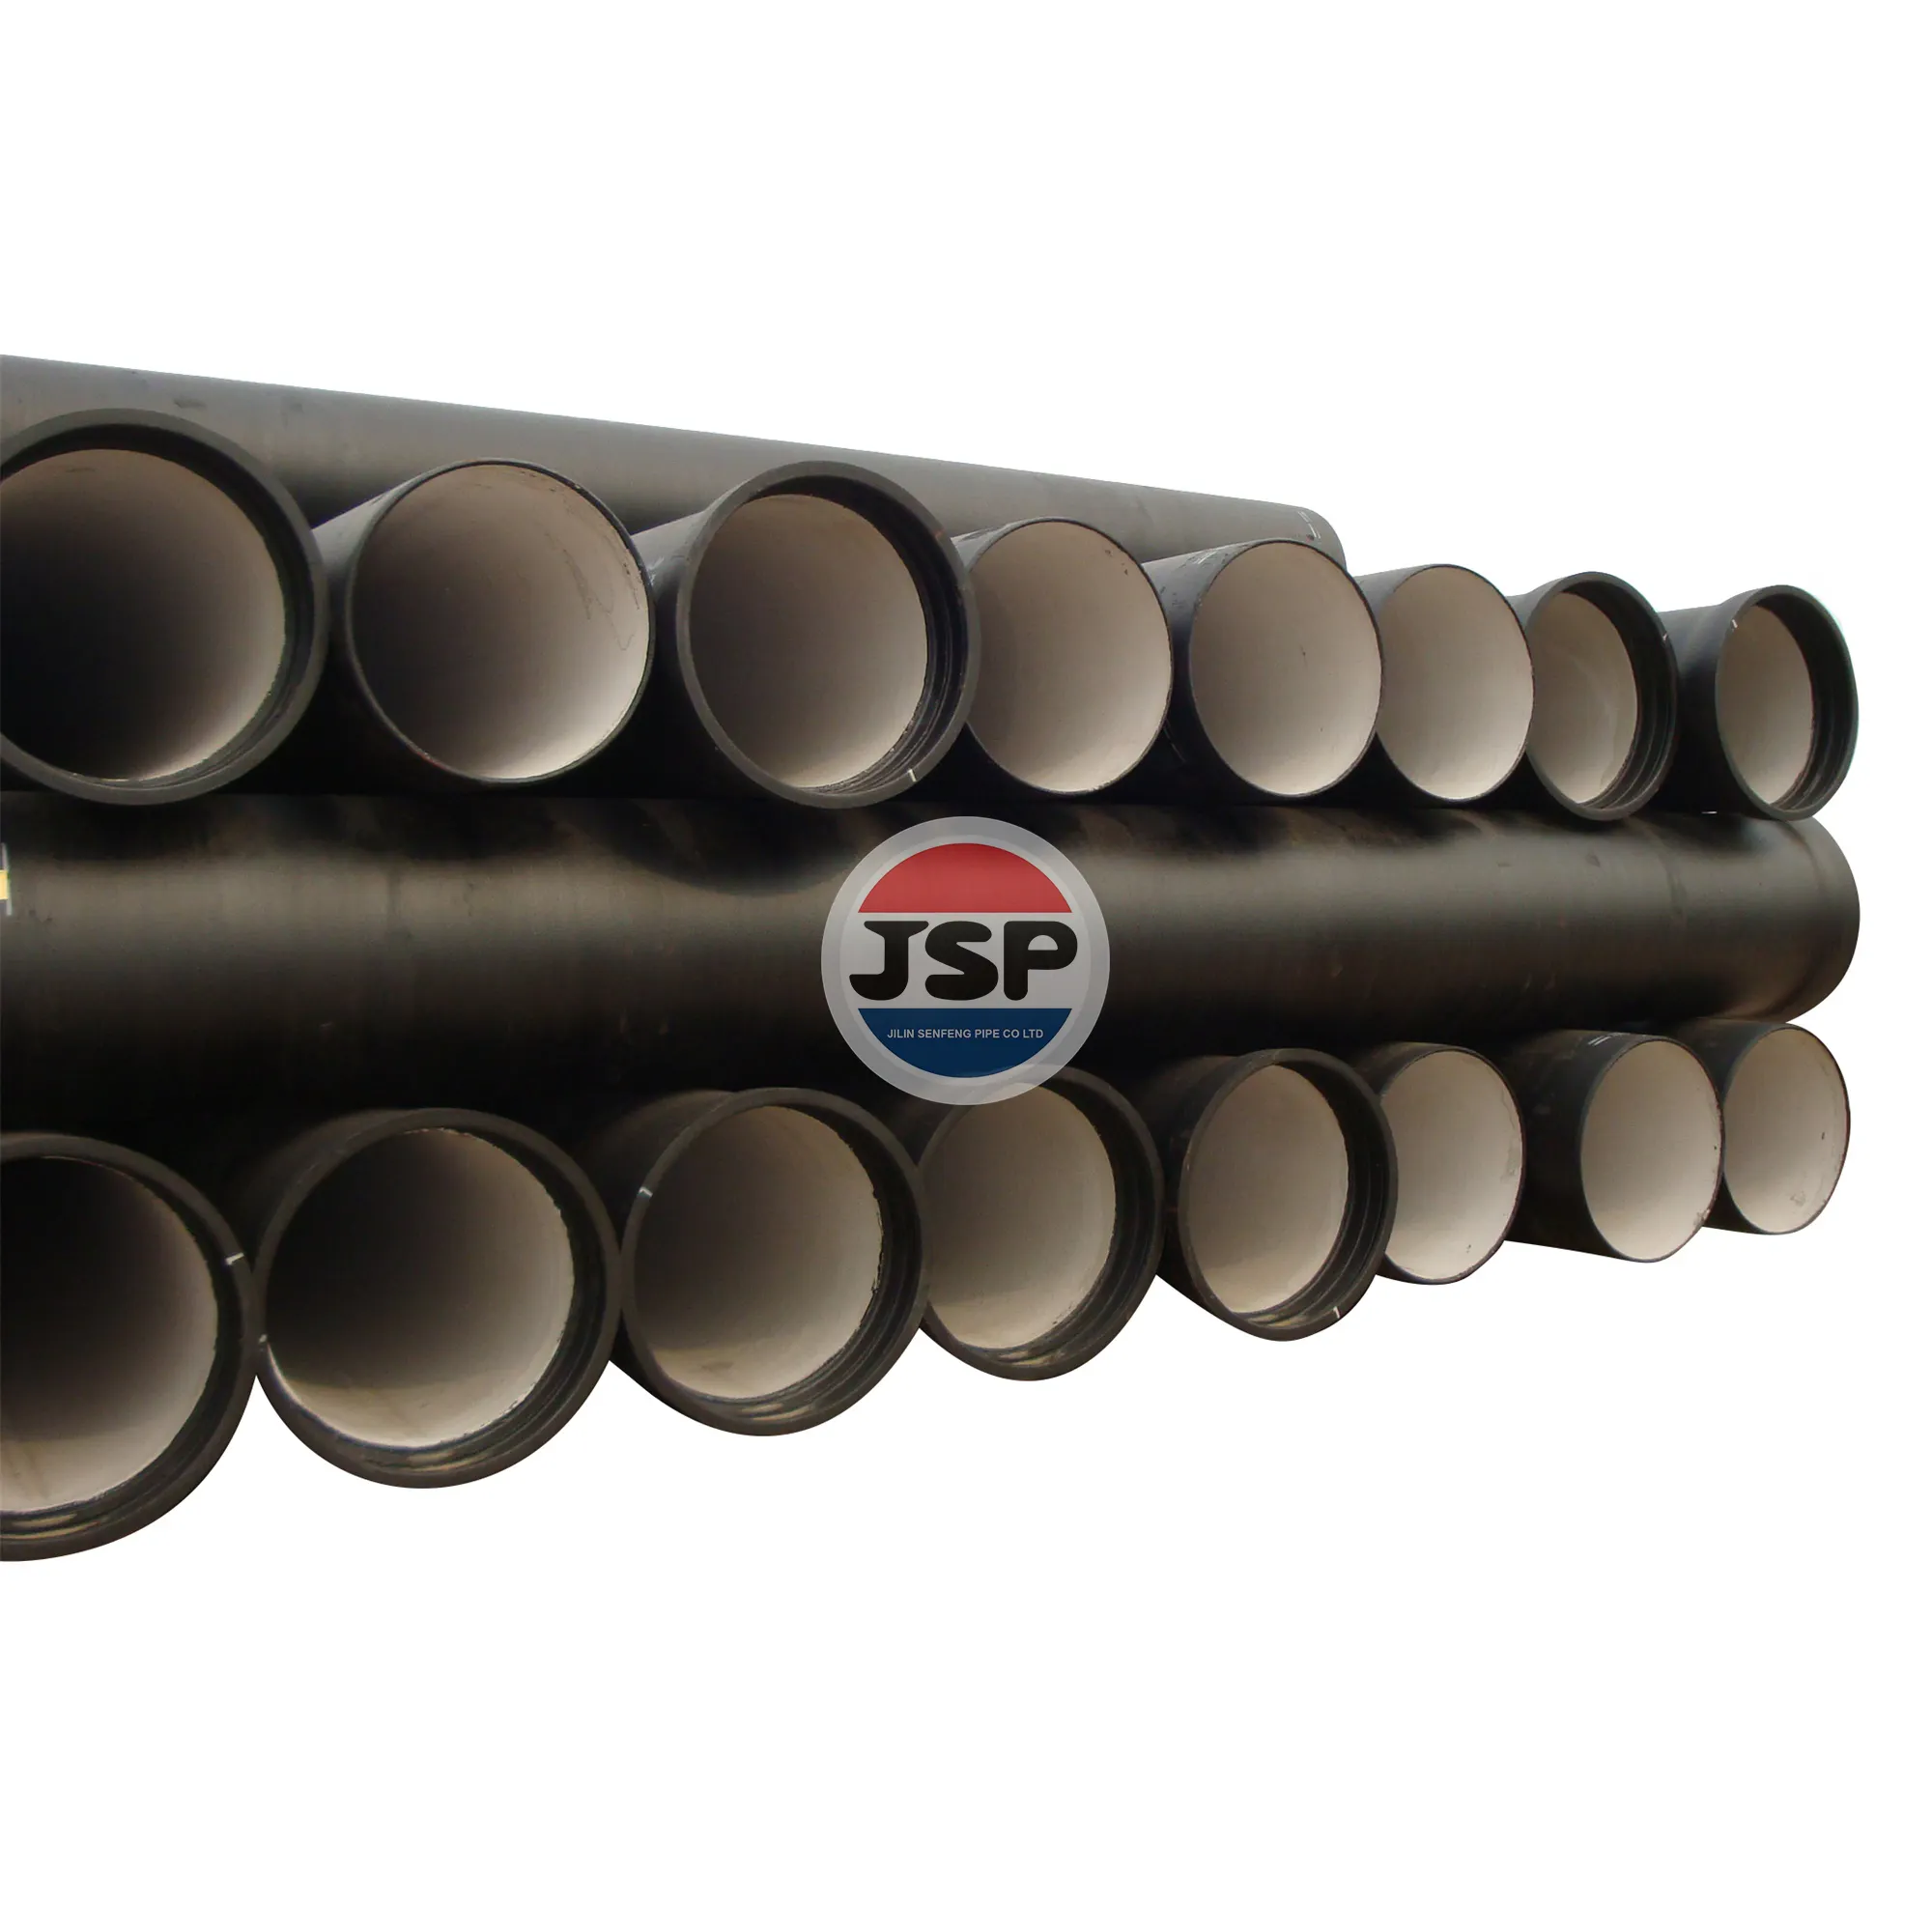 JSP ISO2531 EN598 vendita calda in fabbrica tubo in ferro duttile da 1000mm uno dei principali produttori di tubi in ferro K9,C40,C30,C25